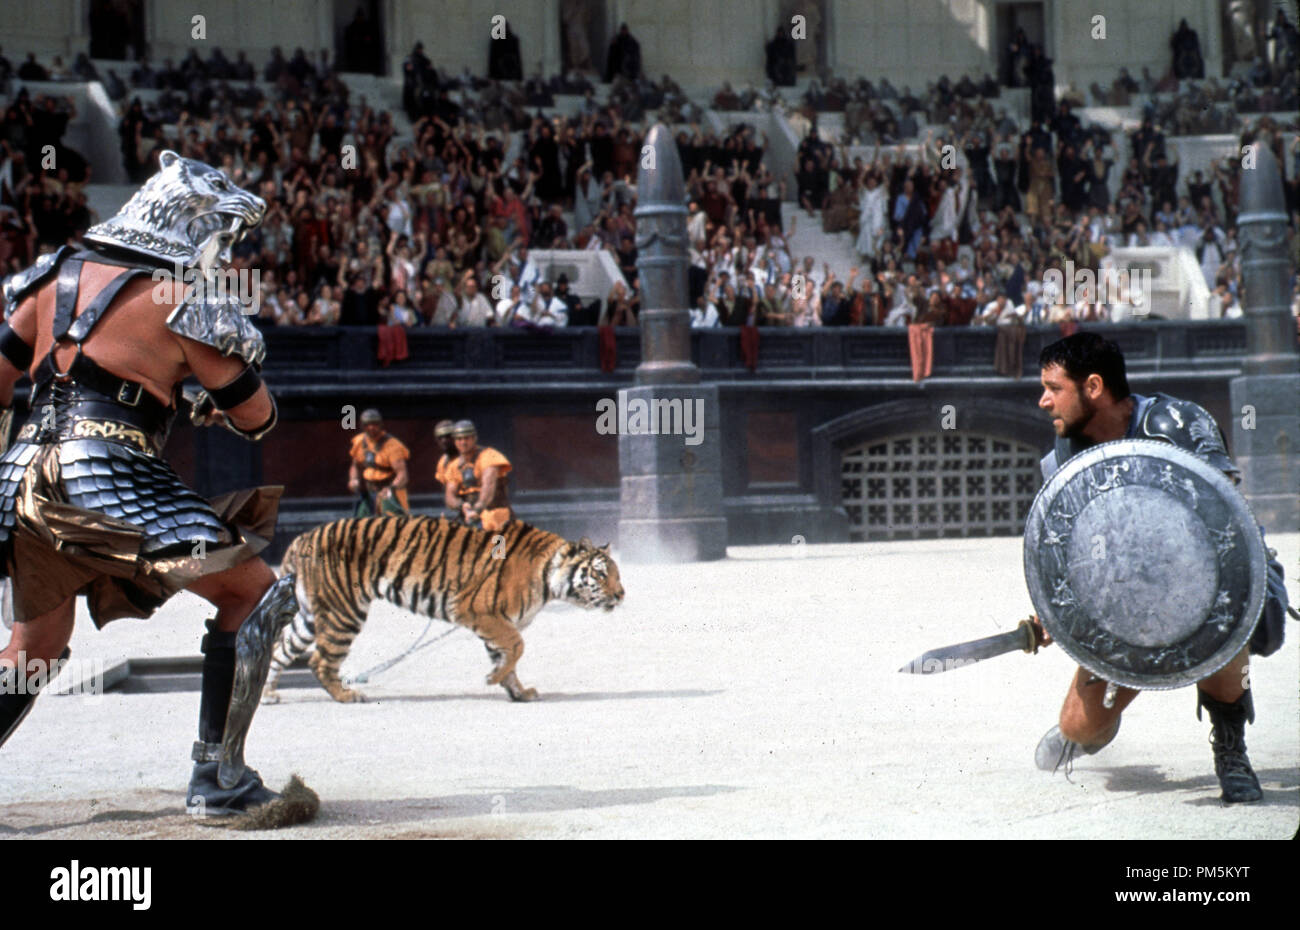 Película sigue / imágenes promocionales de 'Gladiator' Russell Crowe © 2000 Universal/DreamWorks Photo credit: Jaap Buitendijk Archivo de referencia # 30846486THA sólo para uso editorial - Todos los derechos reservados Foto de stock